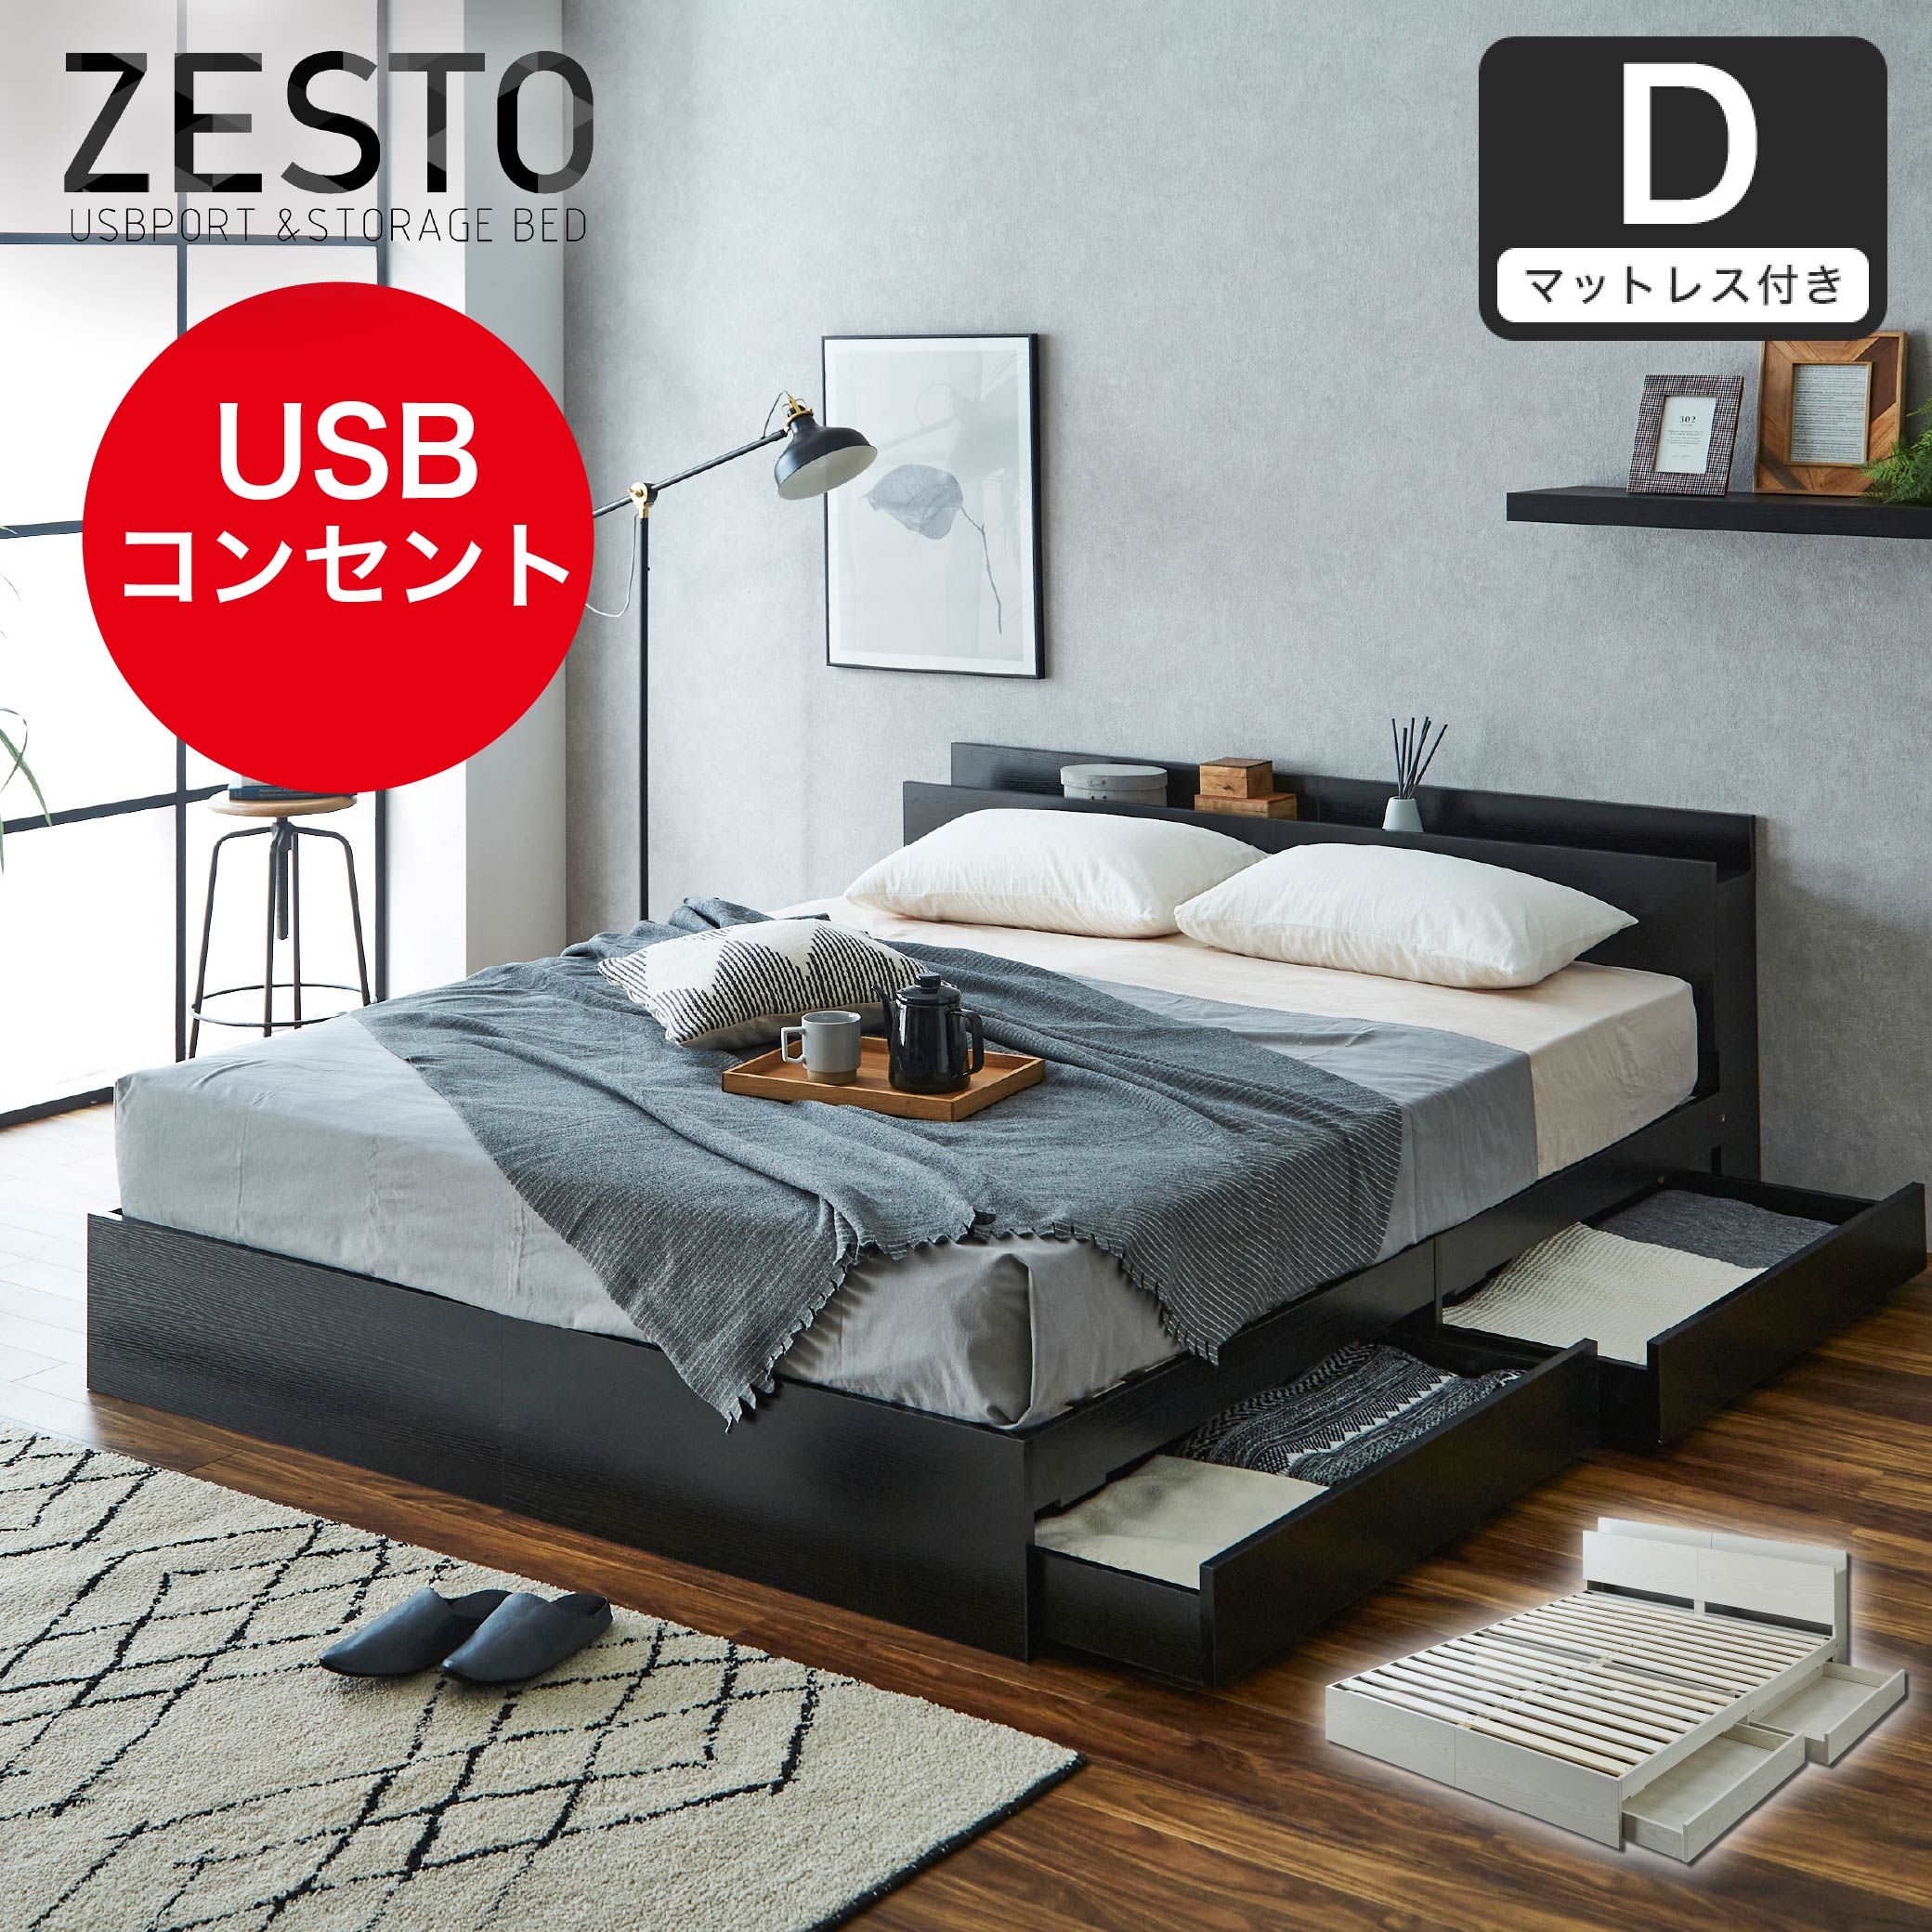 ベッド 収納 ダブルベッド マットレス付き 収納付き USBコンセント付き zesto ゼスト ダブル ネルコZマットレス付き すのこベッド 引き出し 付きベッド zesto 木製ベッド | ベッド・マットレス通販専門店 ネルコンシェルジュ neruco